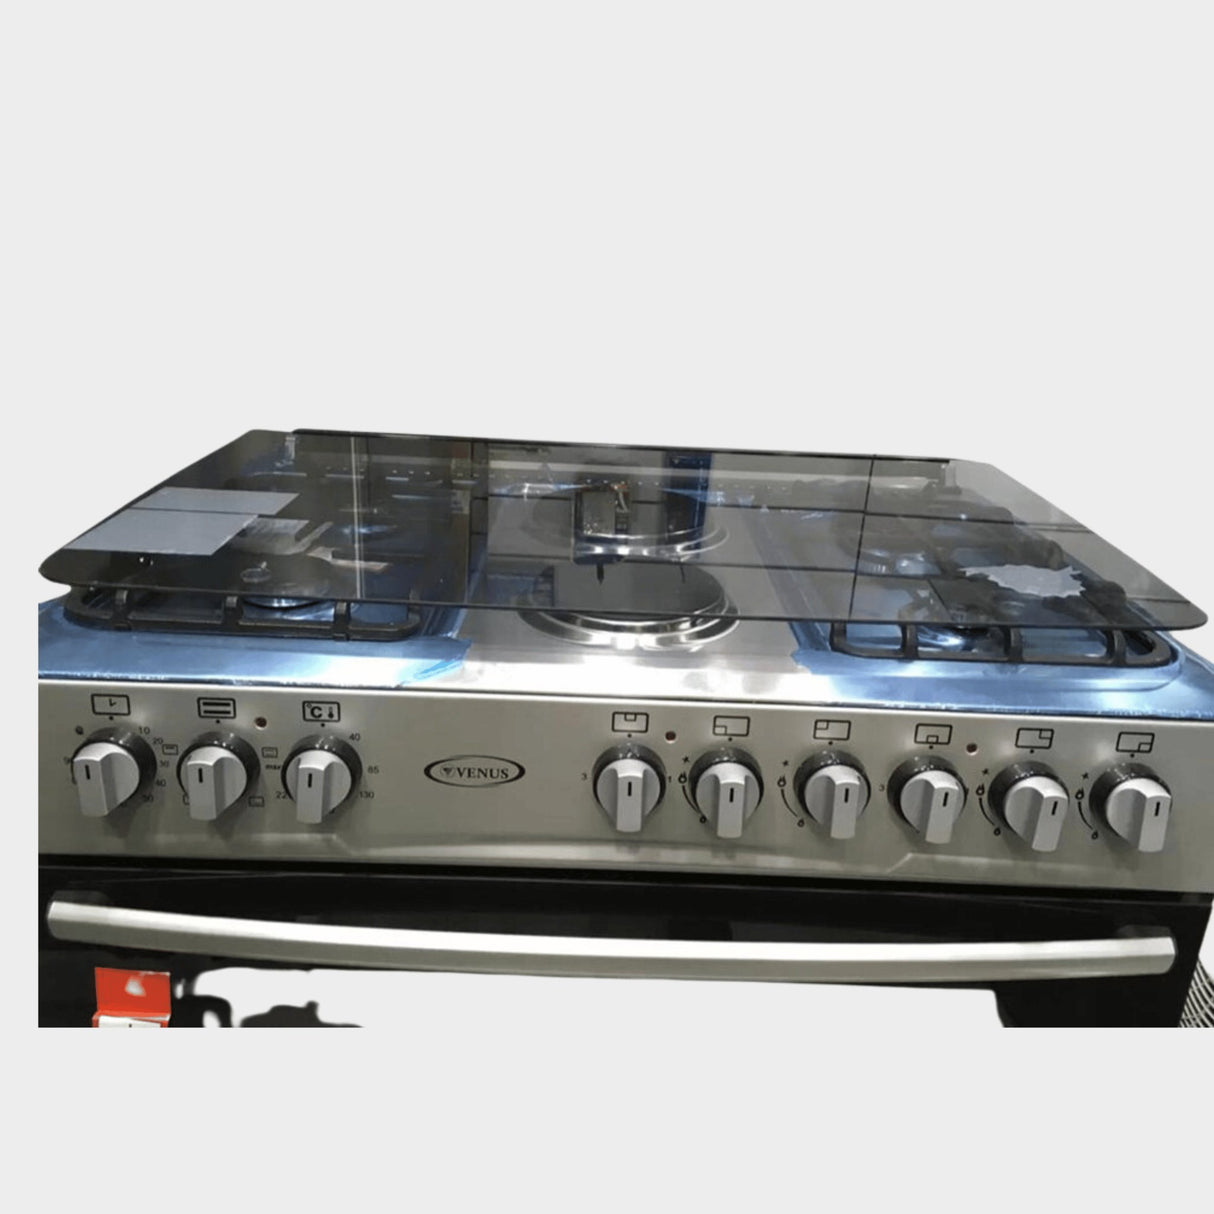 Venus 90x60cm 4Gas + 2Electric Plates Cooker & Oven VC9642 - KWT Tech Mart